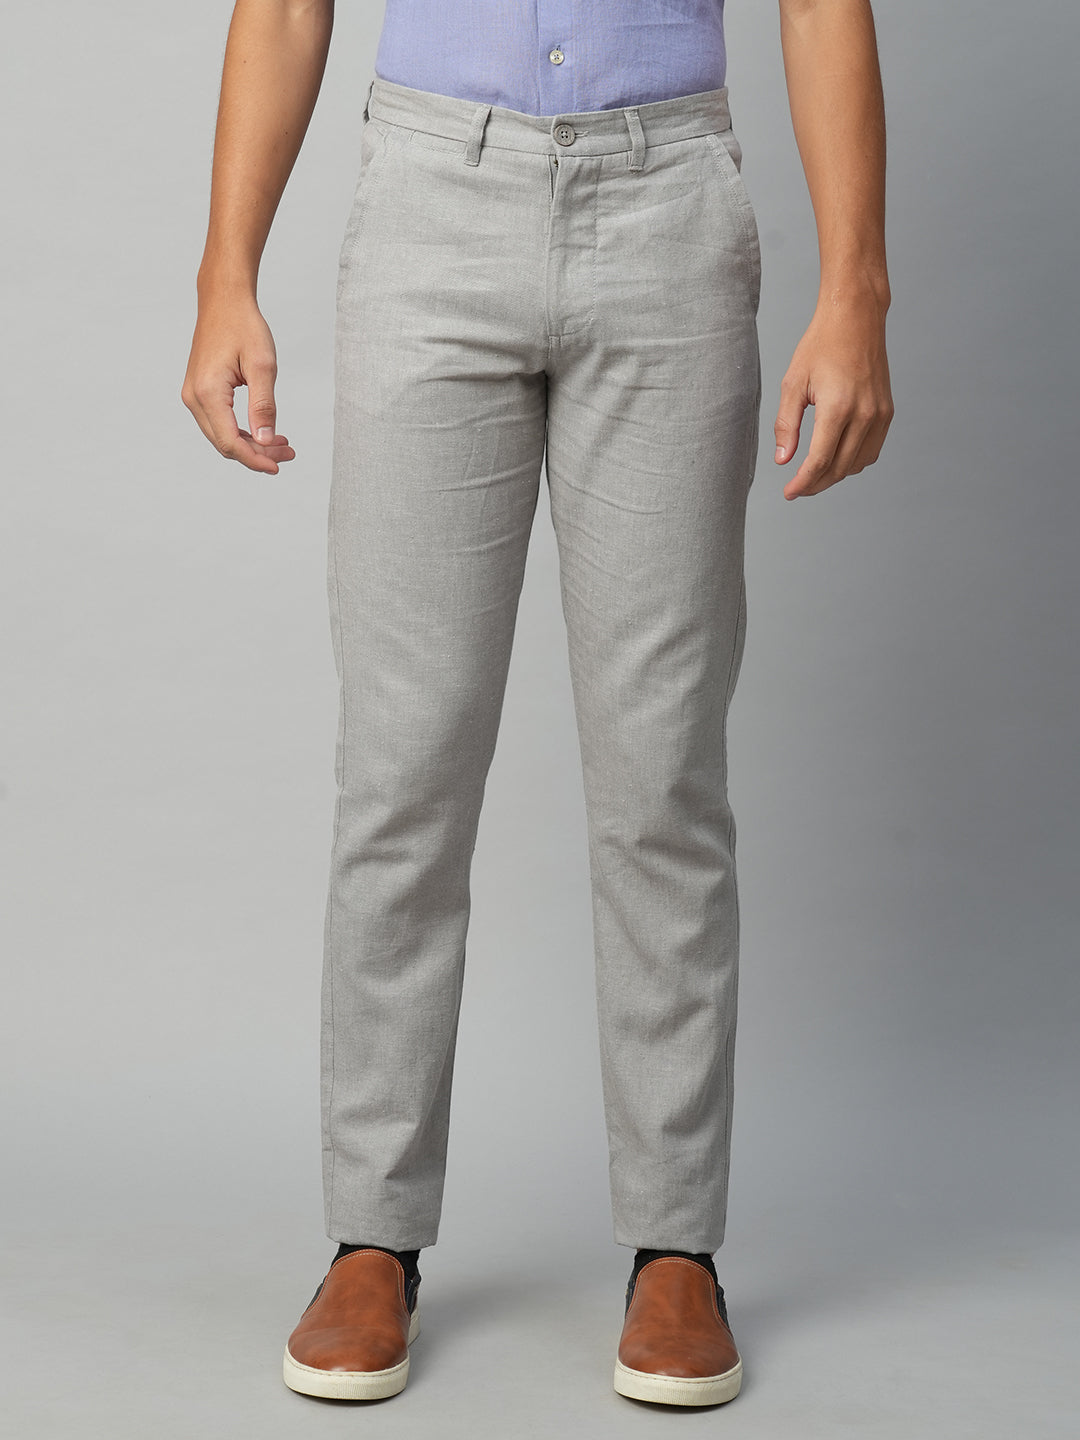 Men's Cotton Linen Grey Slim Fit Pant